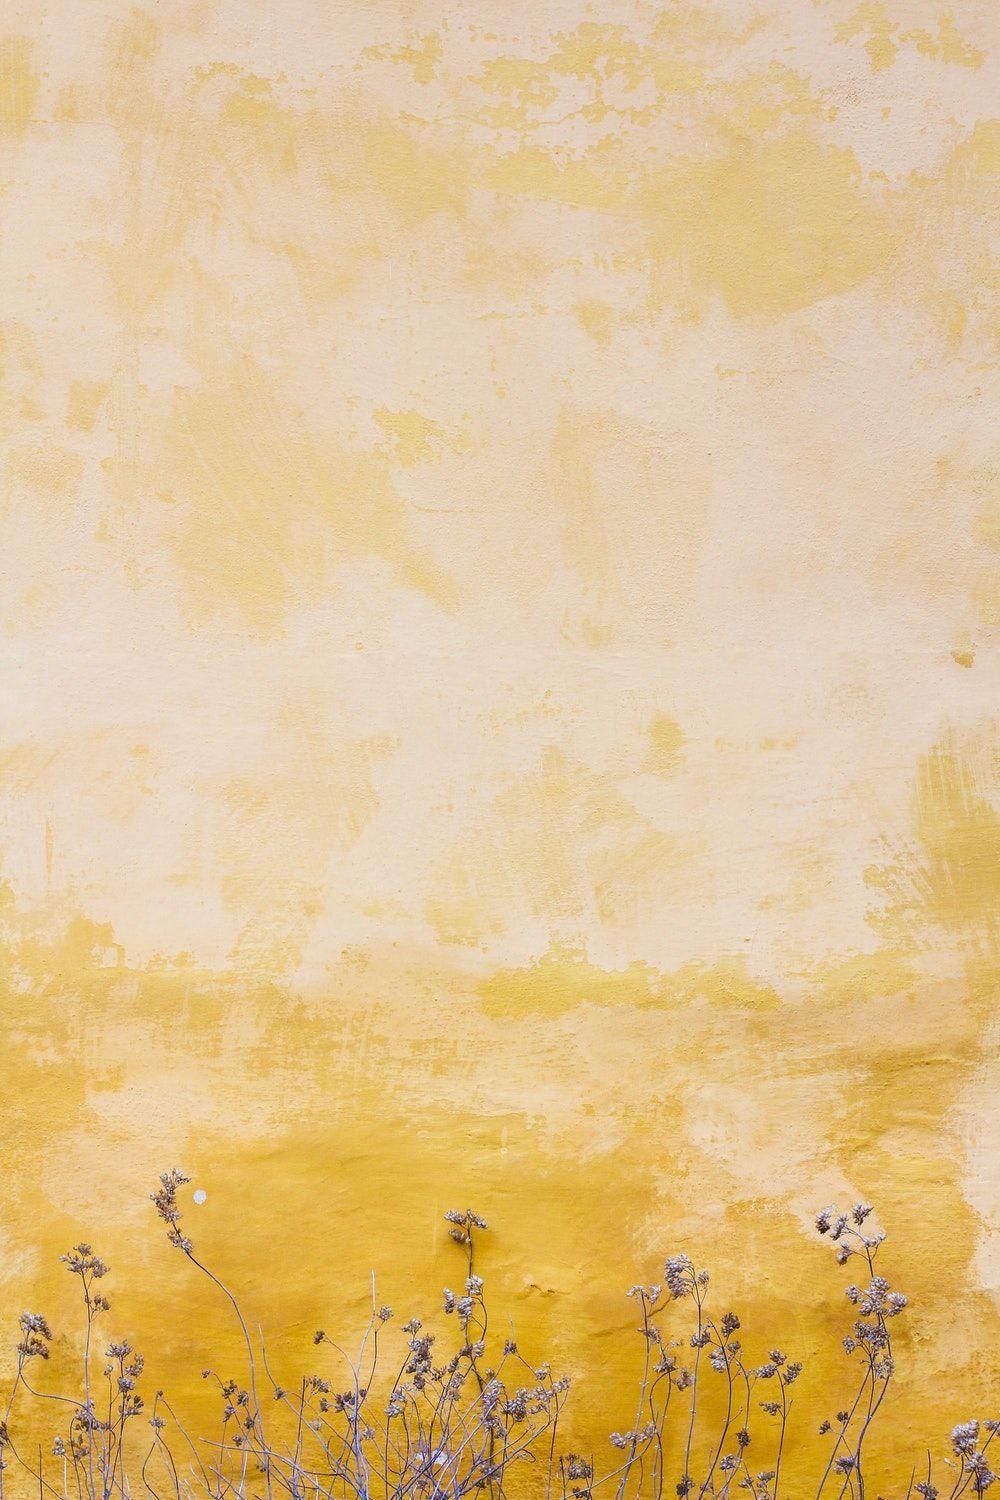  Yellow  Aesthetic  Wallpapers  Top Free Yellow  Aesthetic  